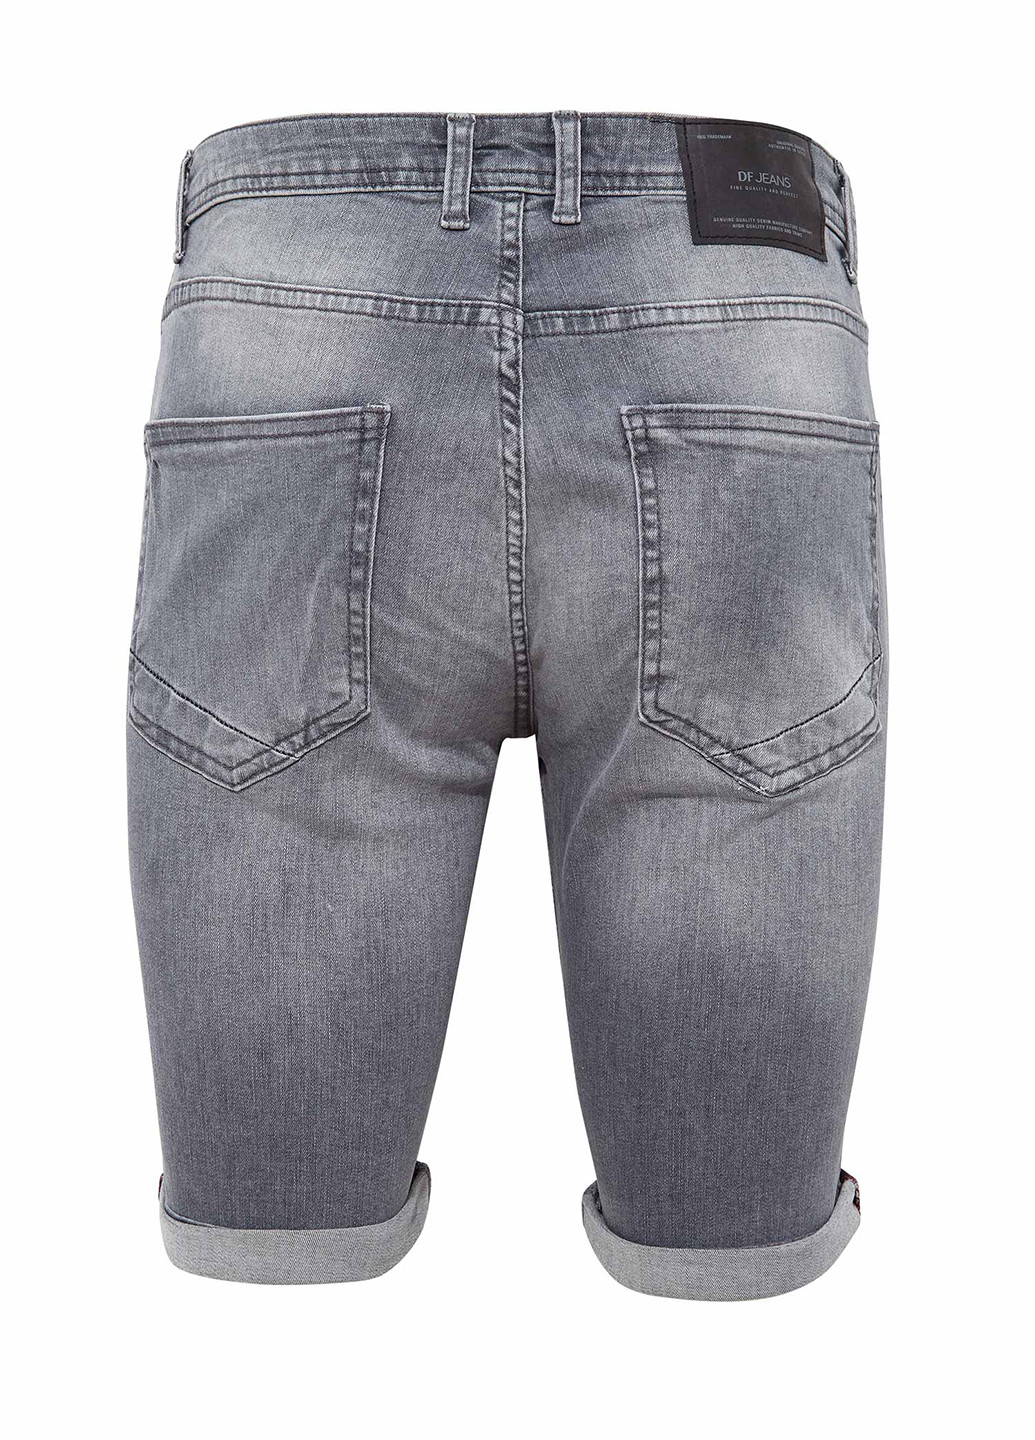 Шорты DeFacto серые джинсовые хлопок